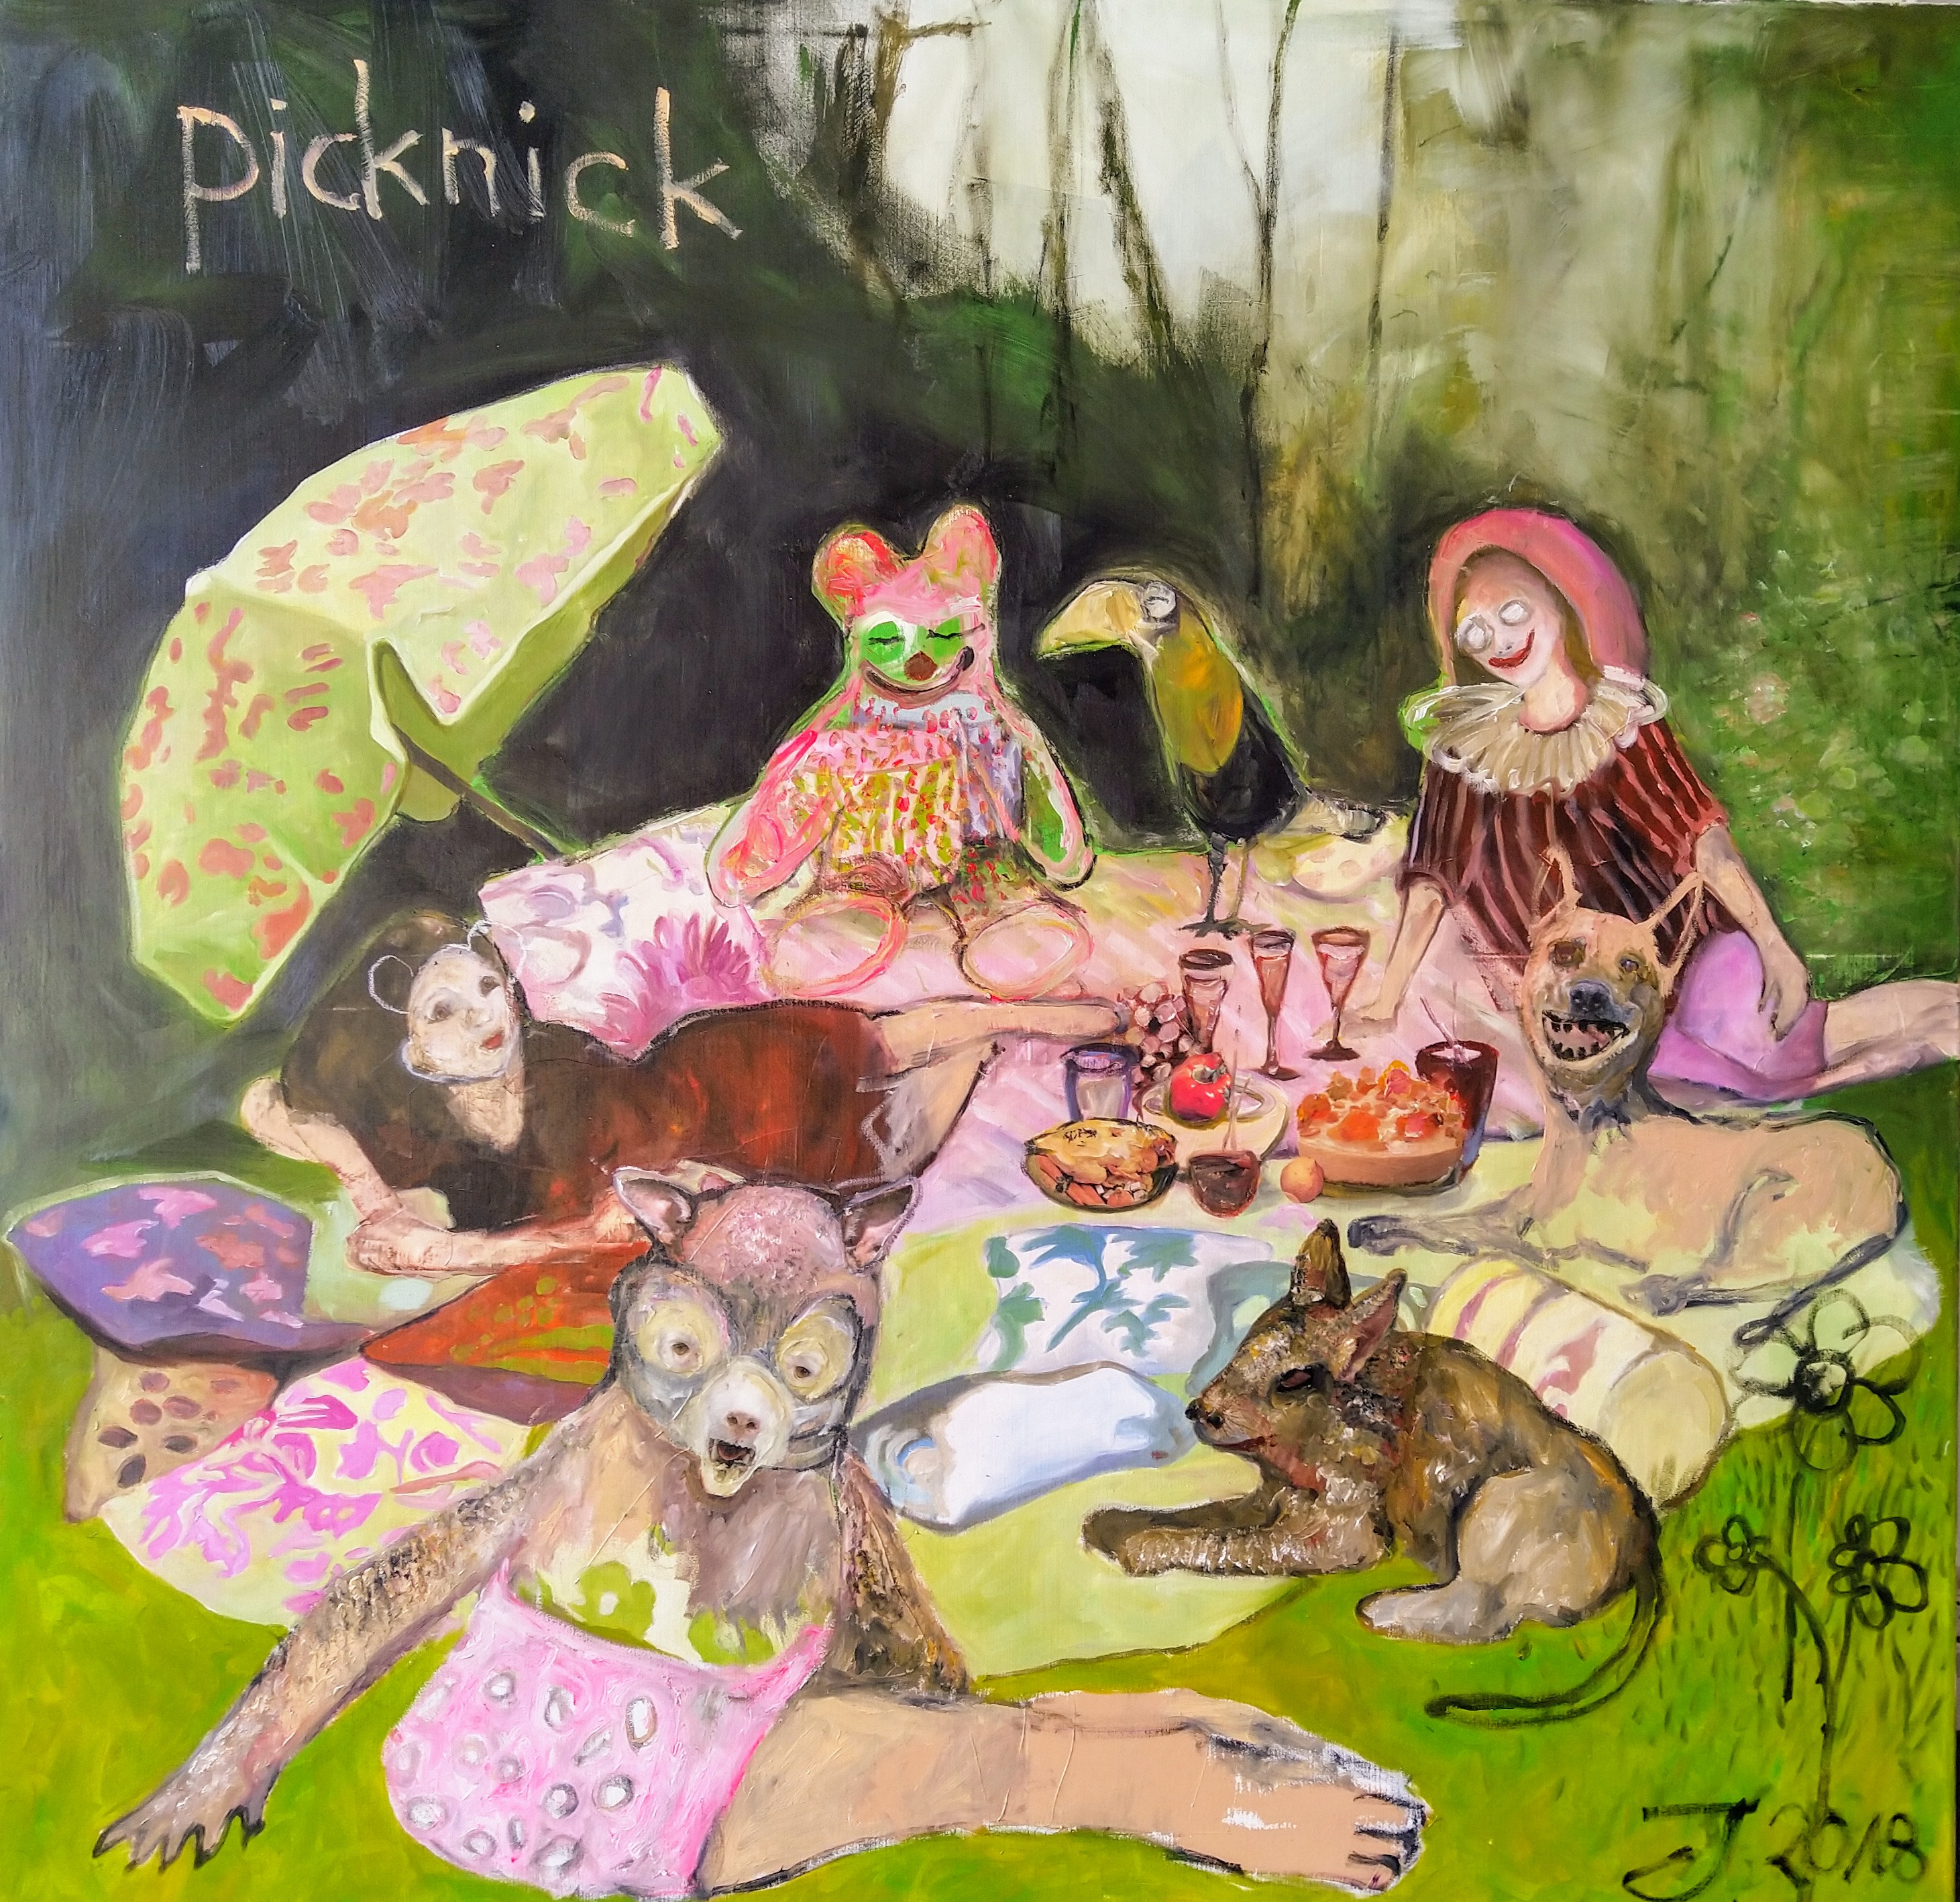 Picknick"